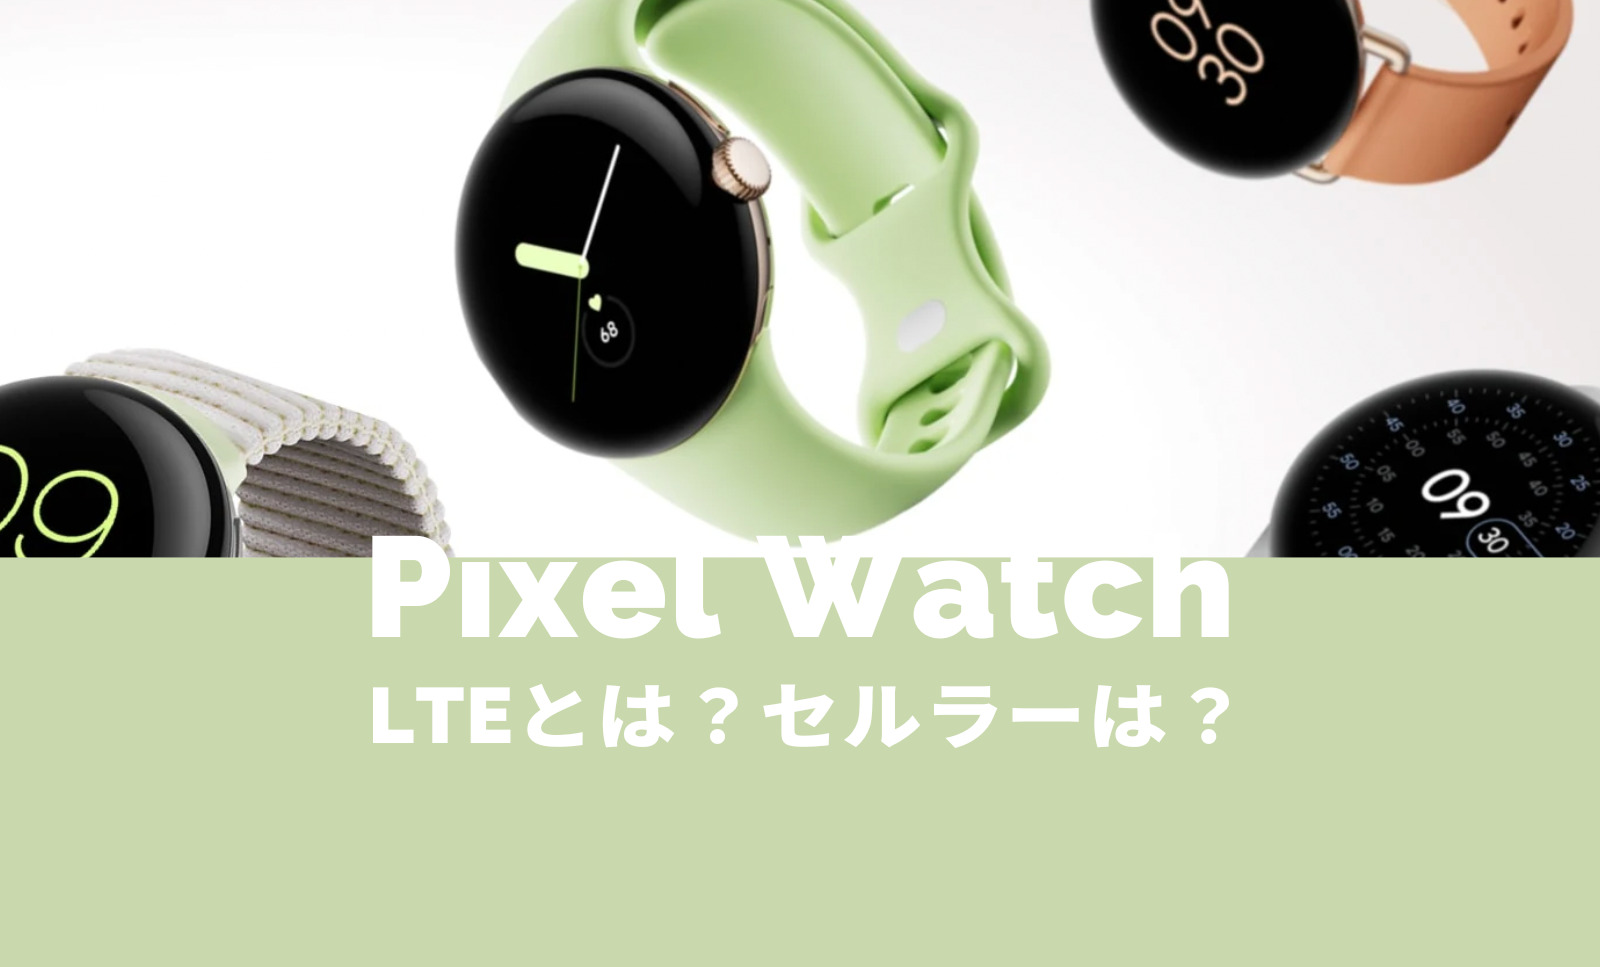 Pixel Watch(ピクセルウォッチ)のLTEとは？eSIMに対応してセルラーモデルがある？のサムネイル画像